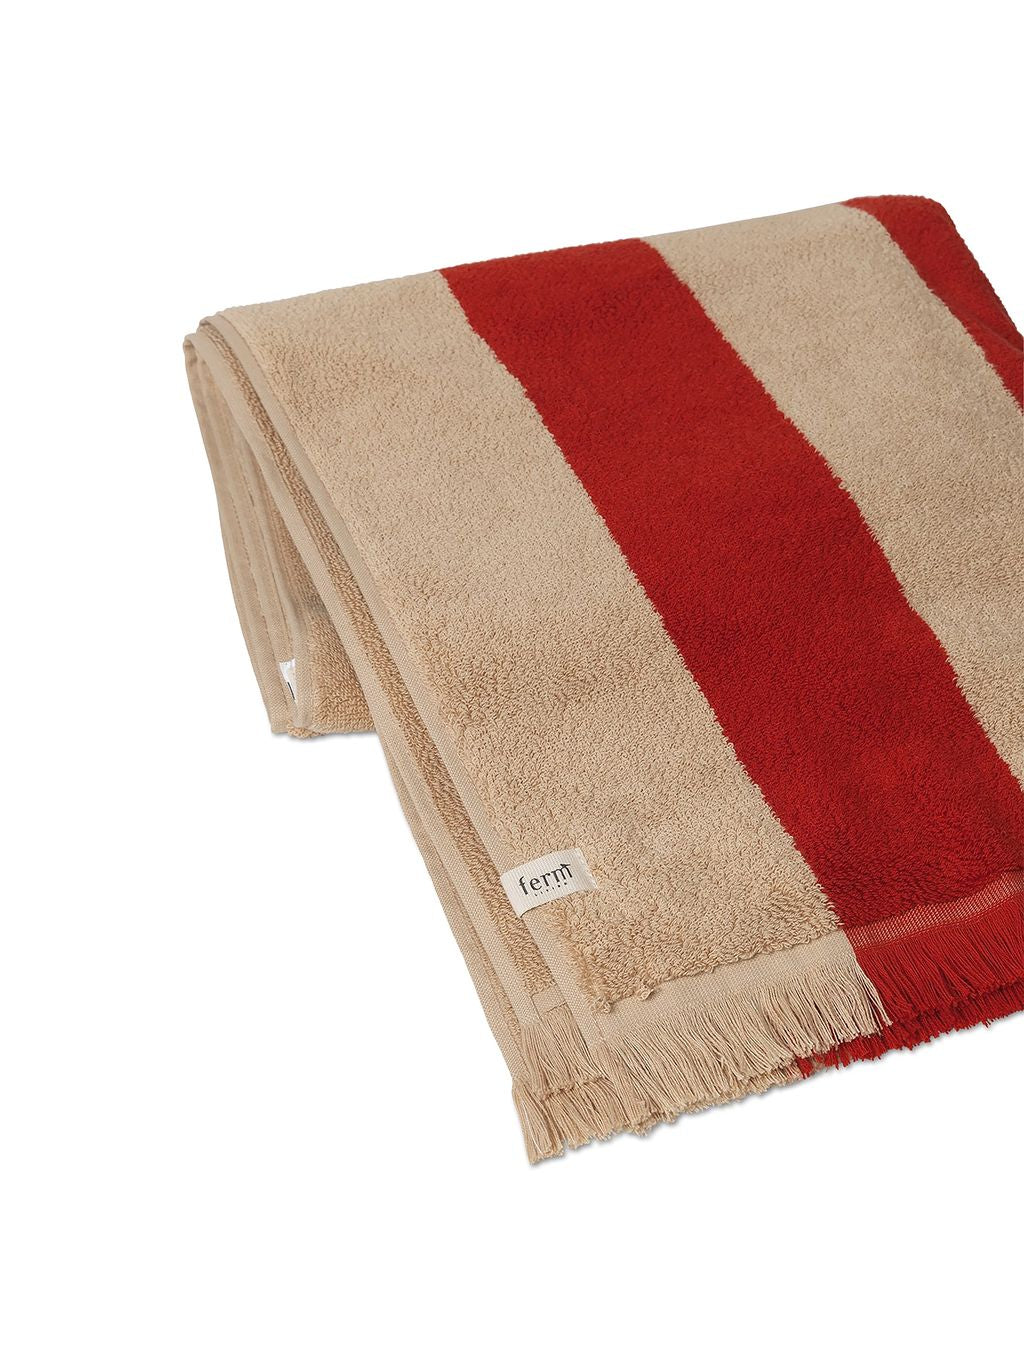 Ferm Living Alee Bath Towel 70x140 Cm, Light Camel/Red